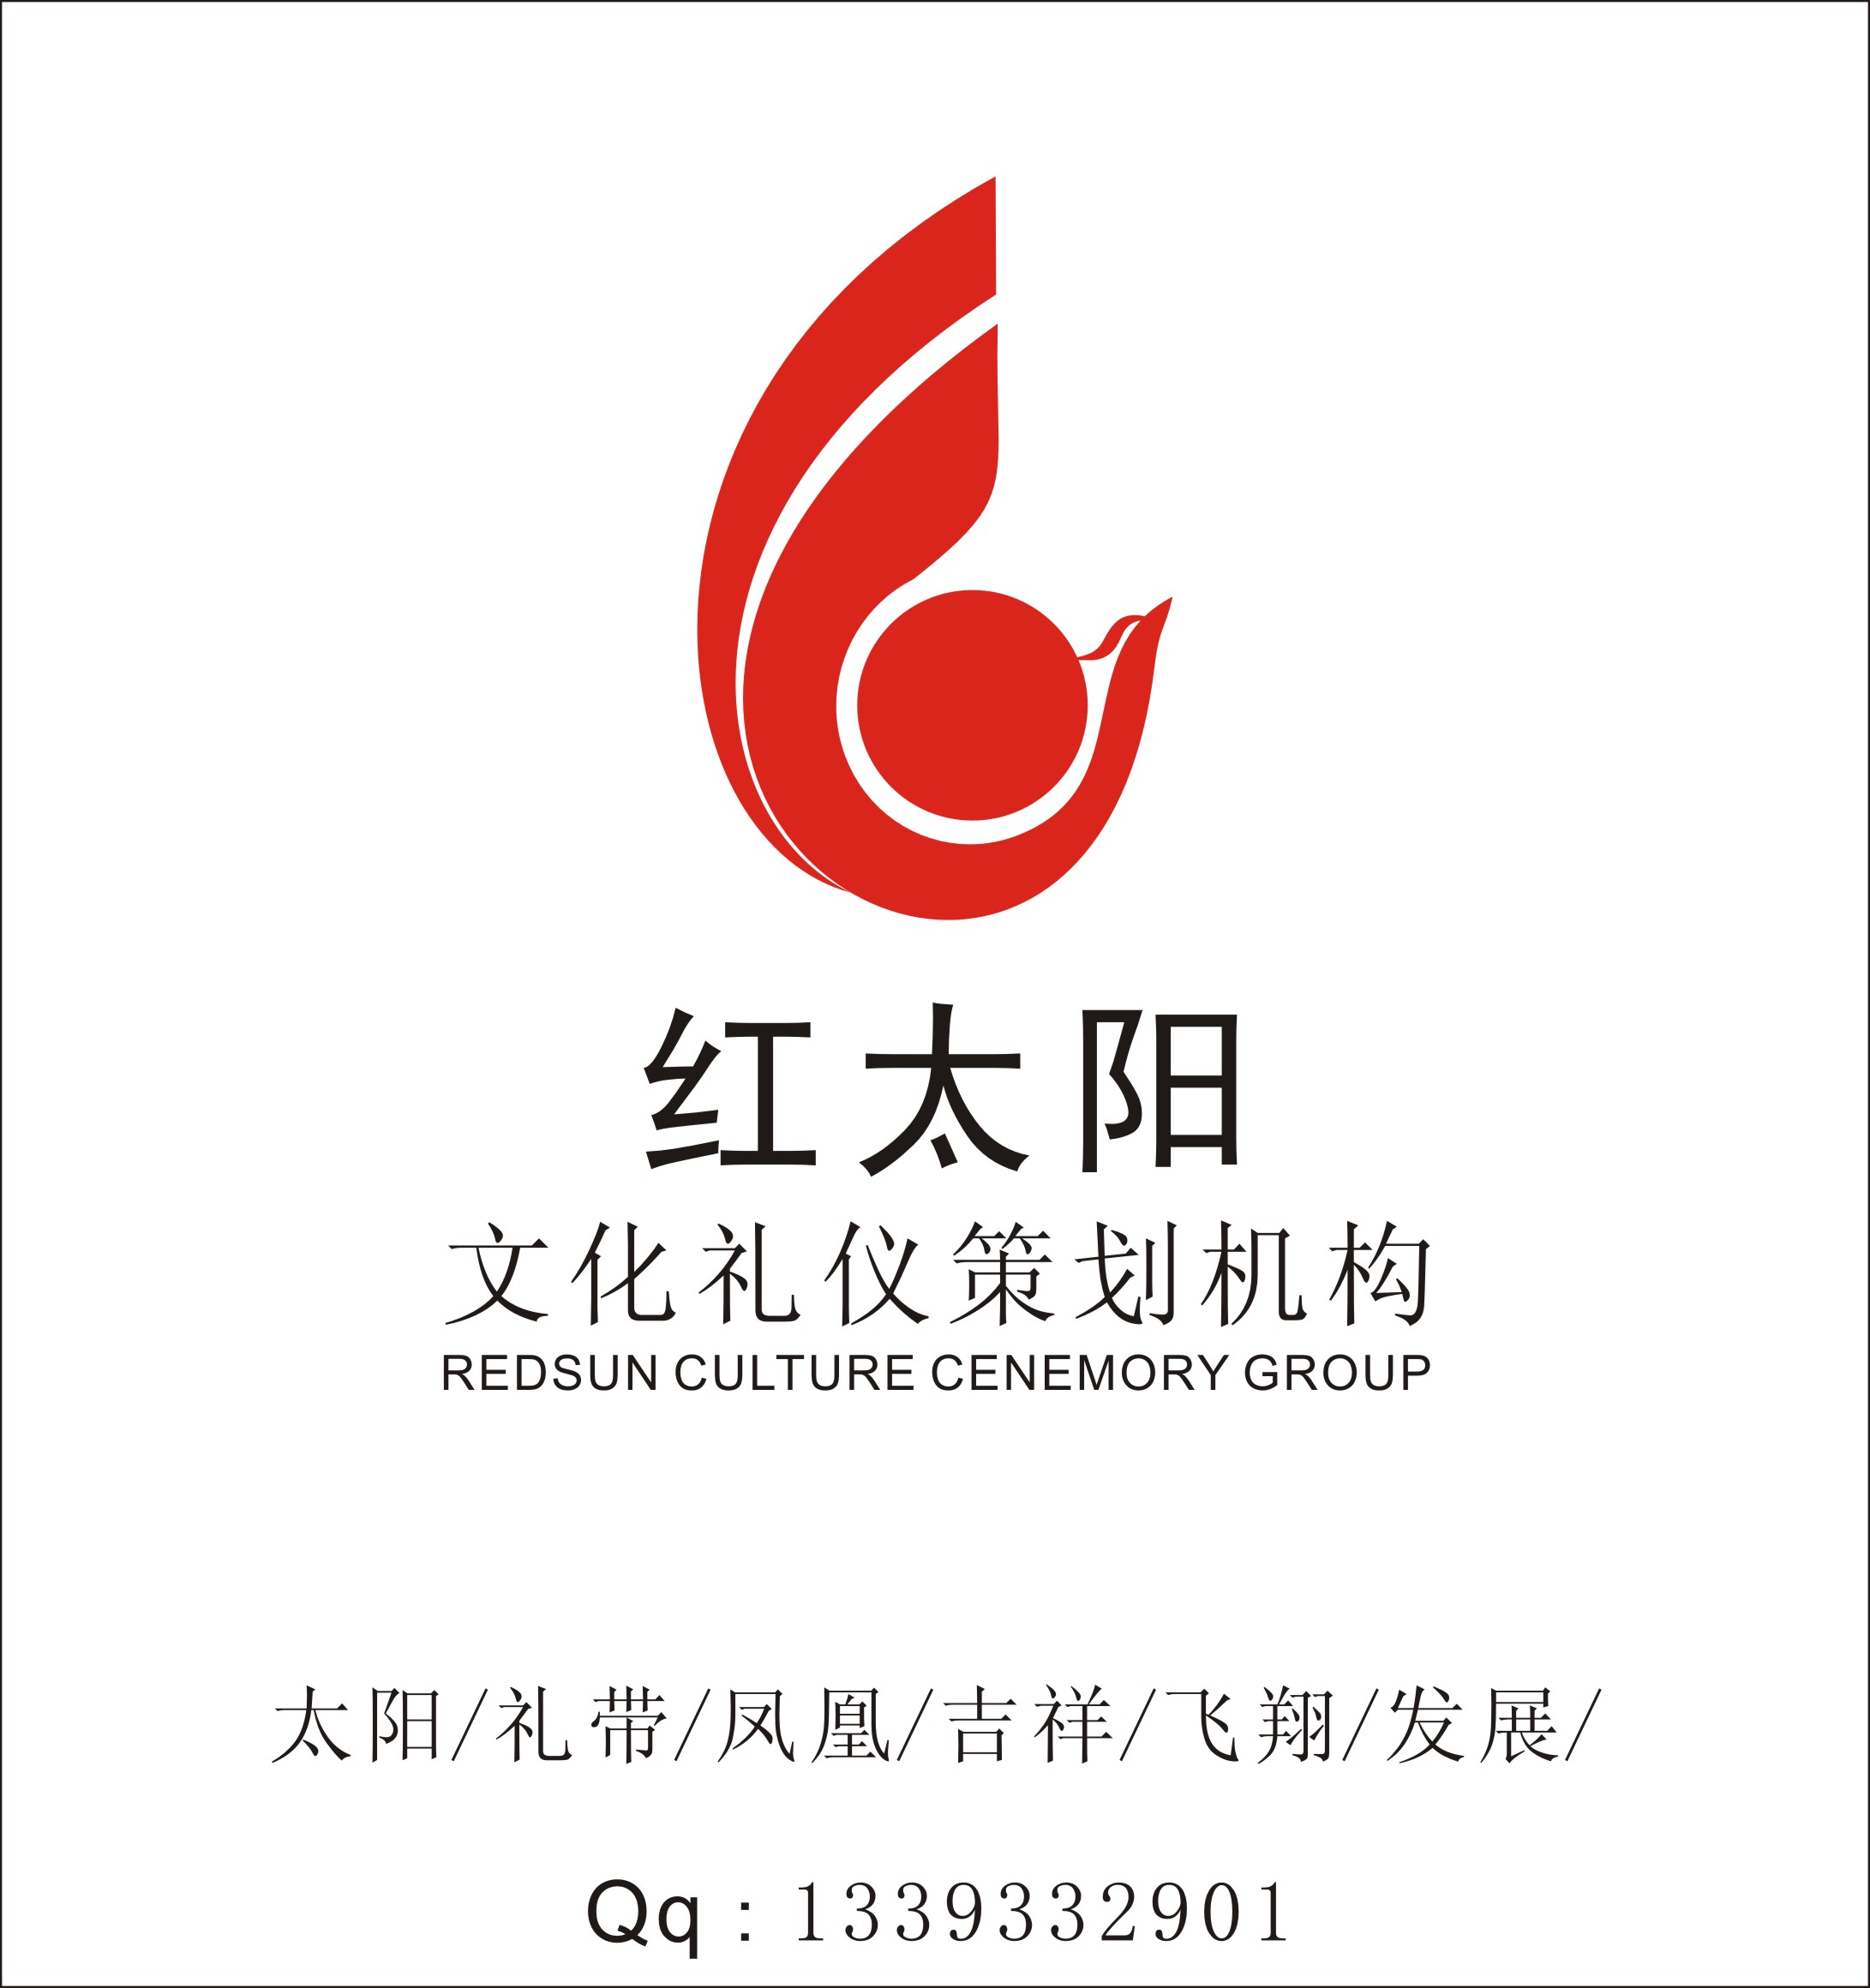 红太阳文化礼仪策划机构logo设计_2455657_k68威客网